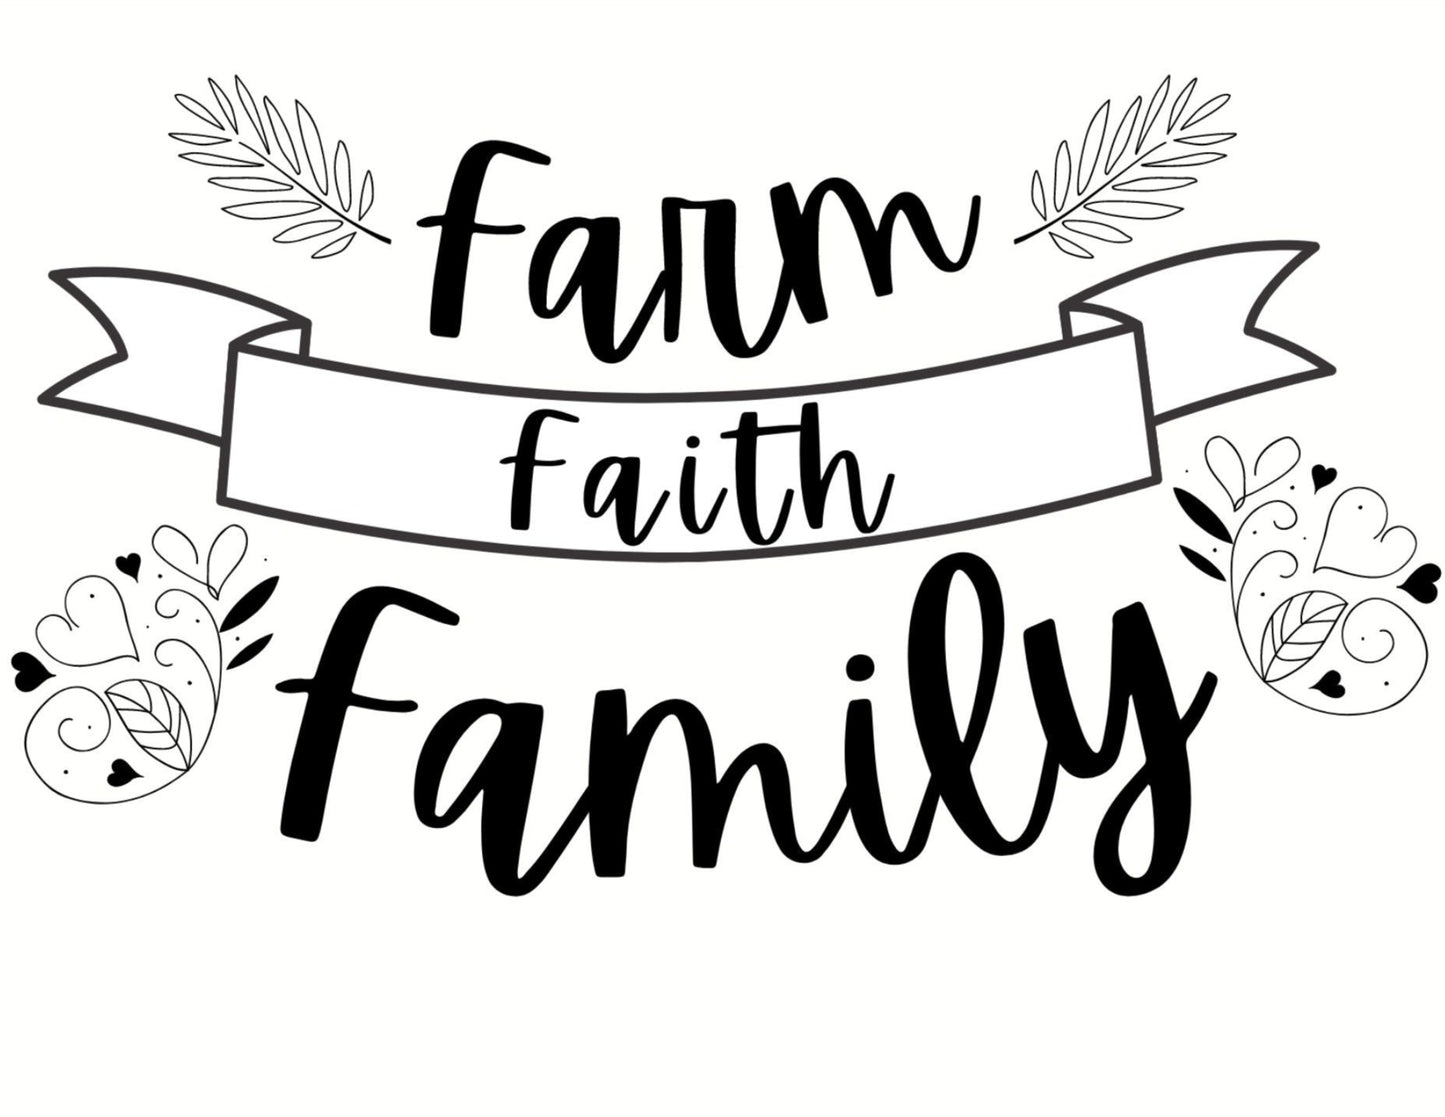 Farm Faith Family